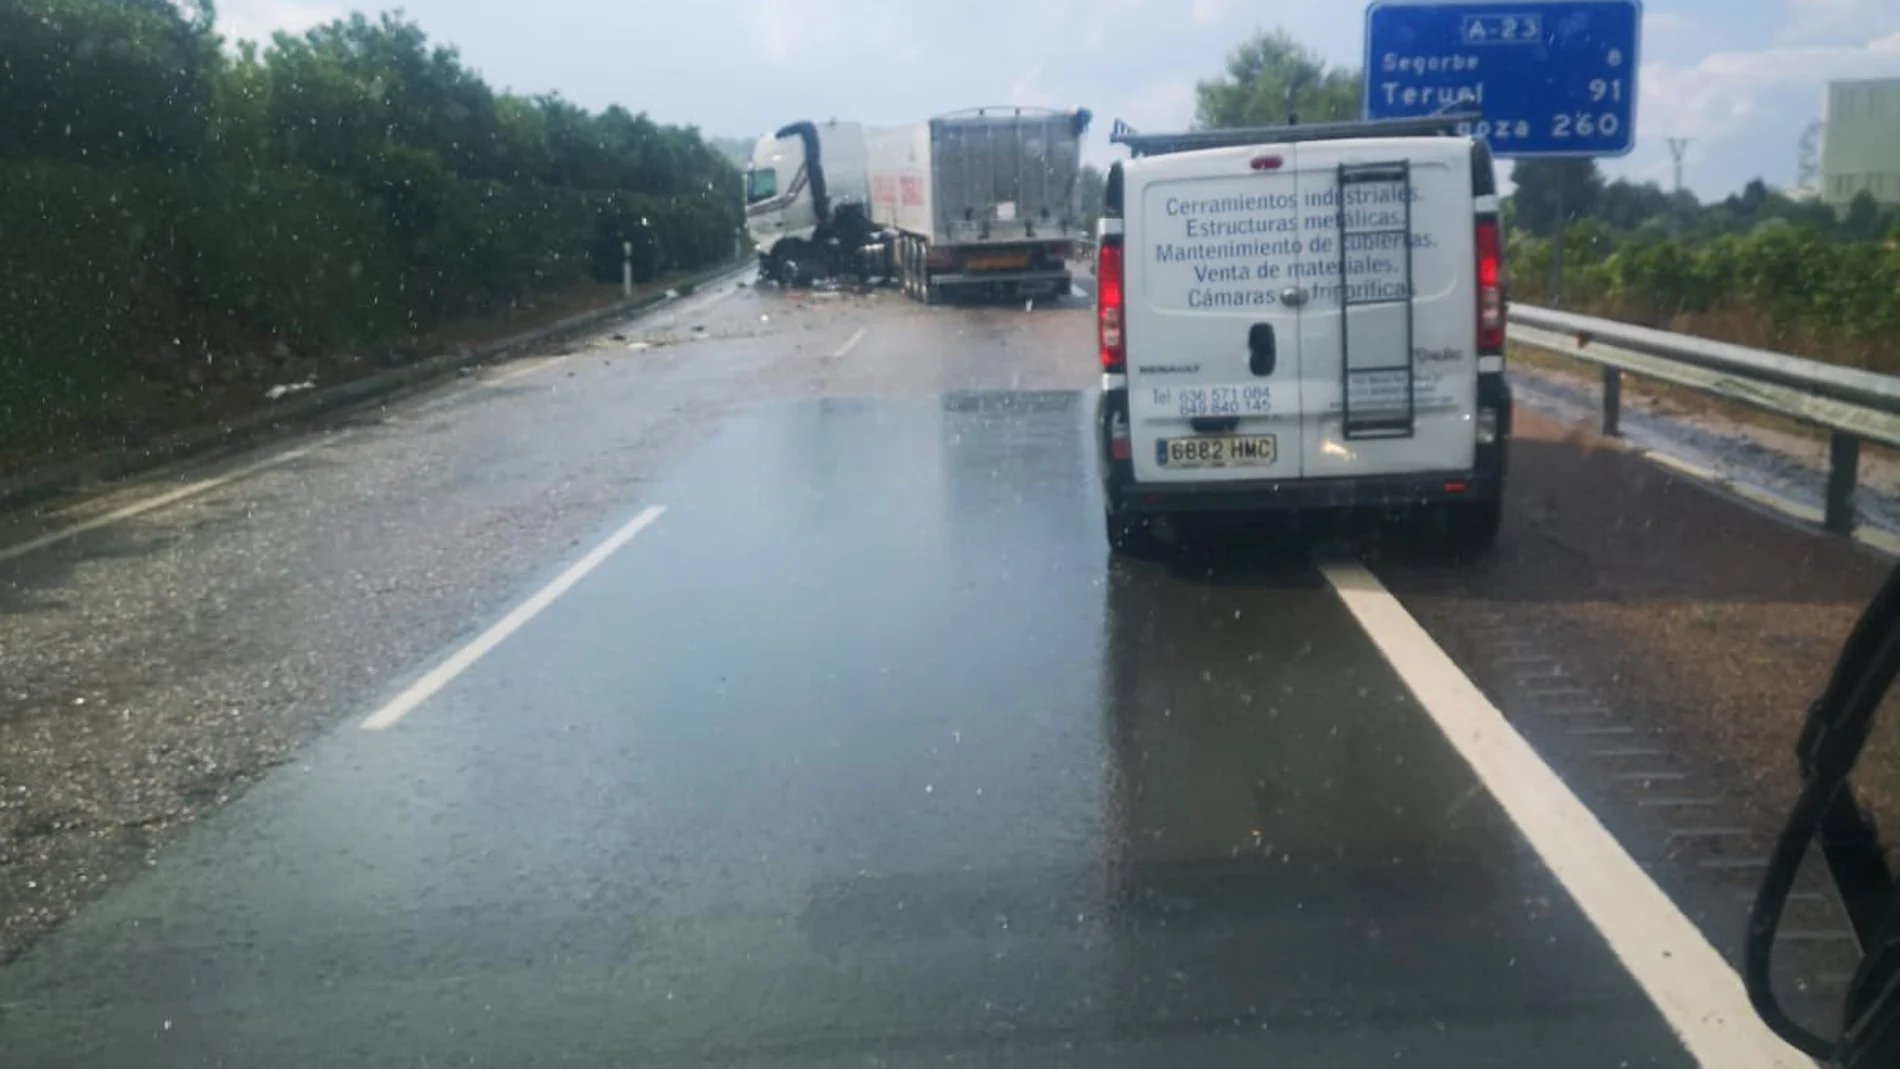 Imagen del accidente de tráfico ocurrido en Soneja, en la comarca del Alt Palància (Castellón)